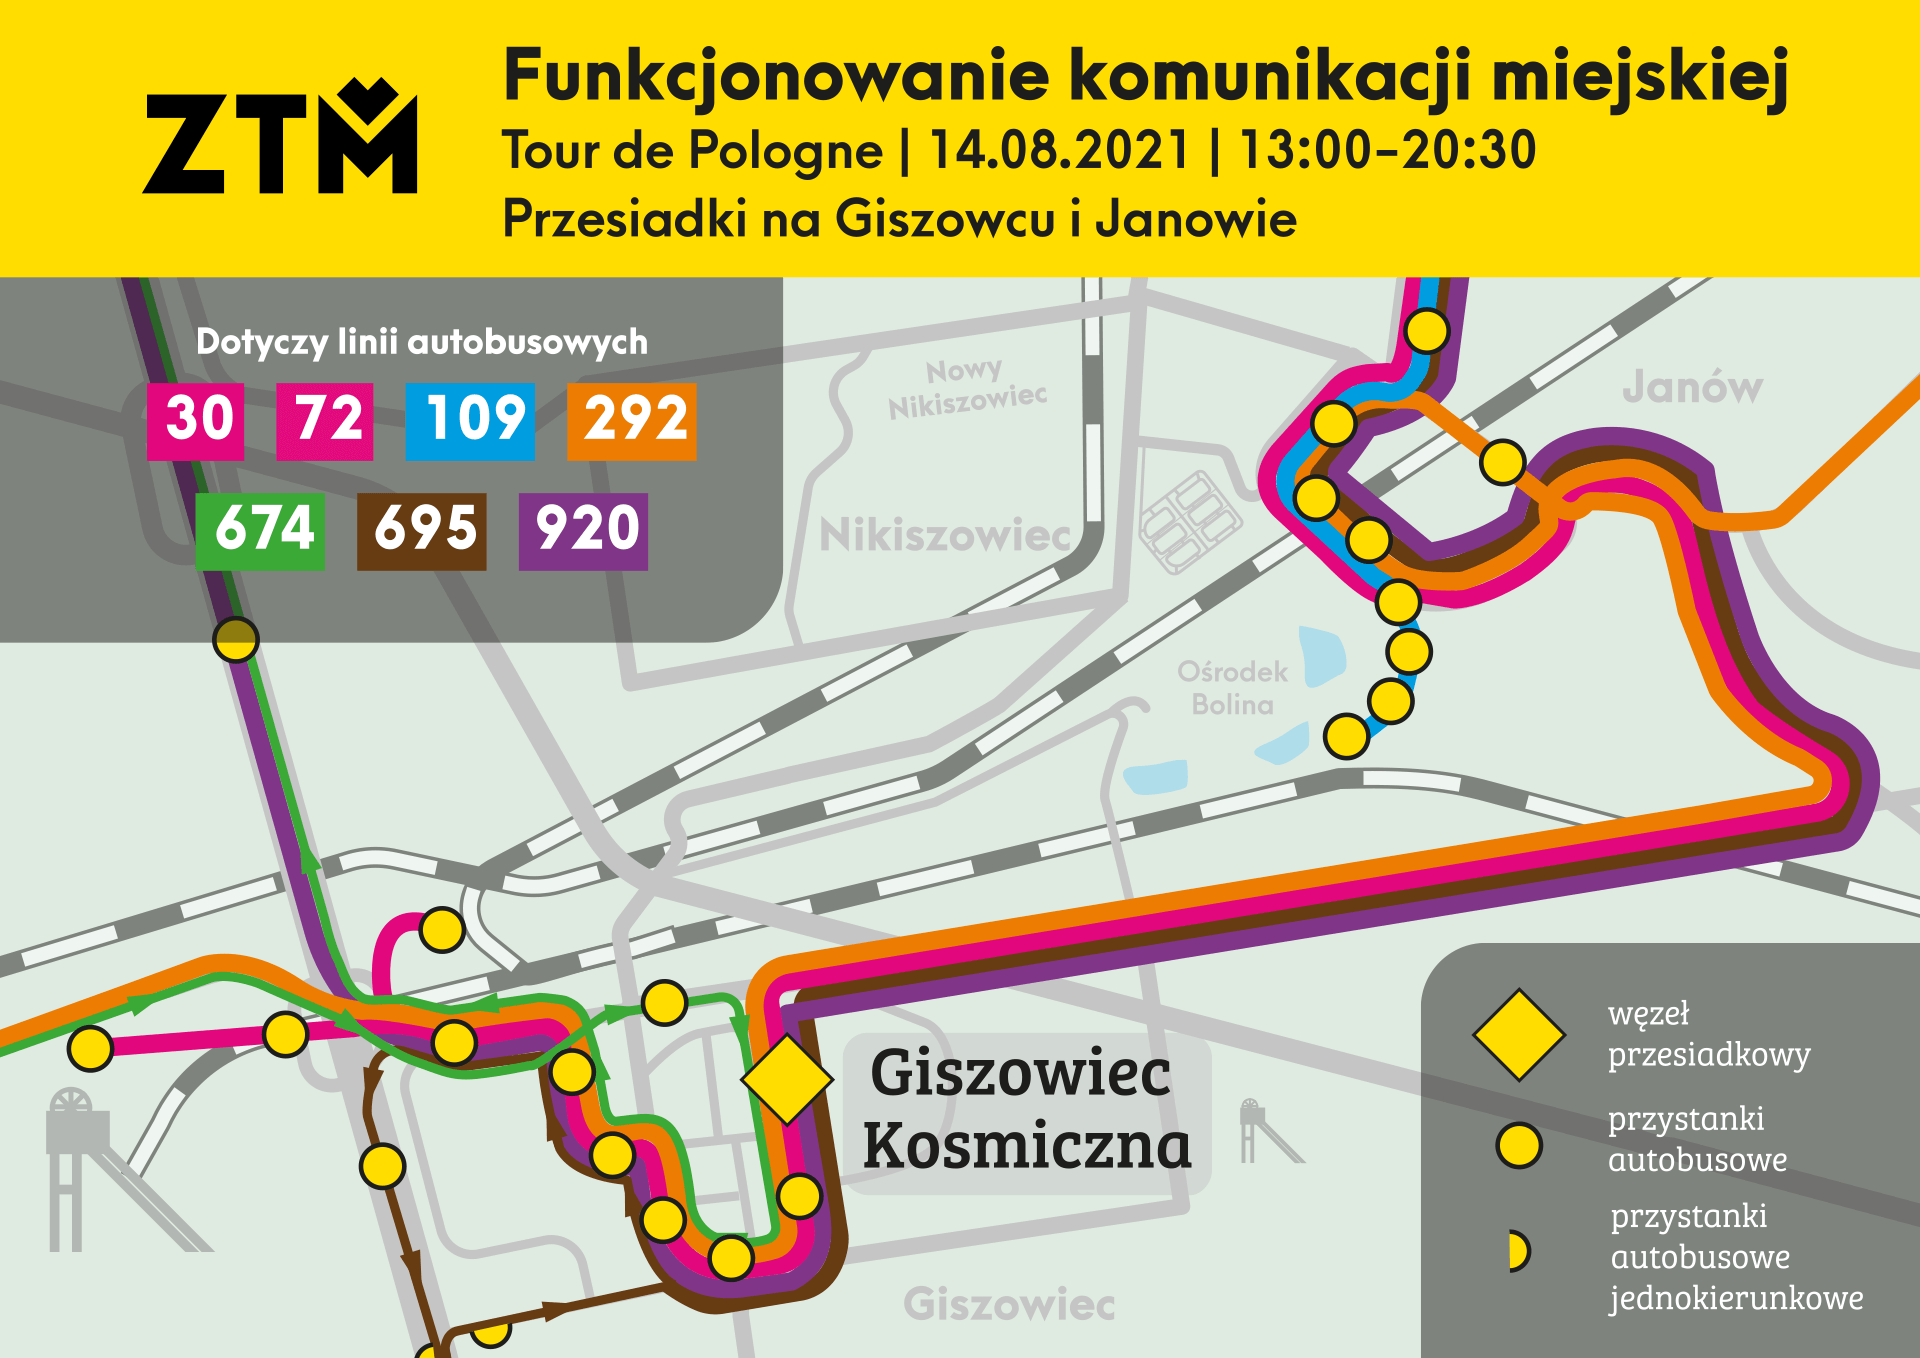 ZTM Tour de Pologne Mapy objazdowe Katowice Janow Giszowiec